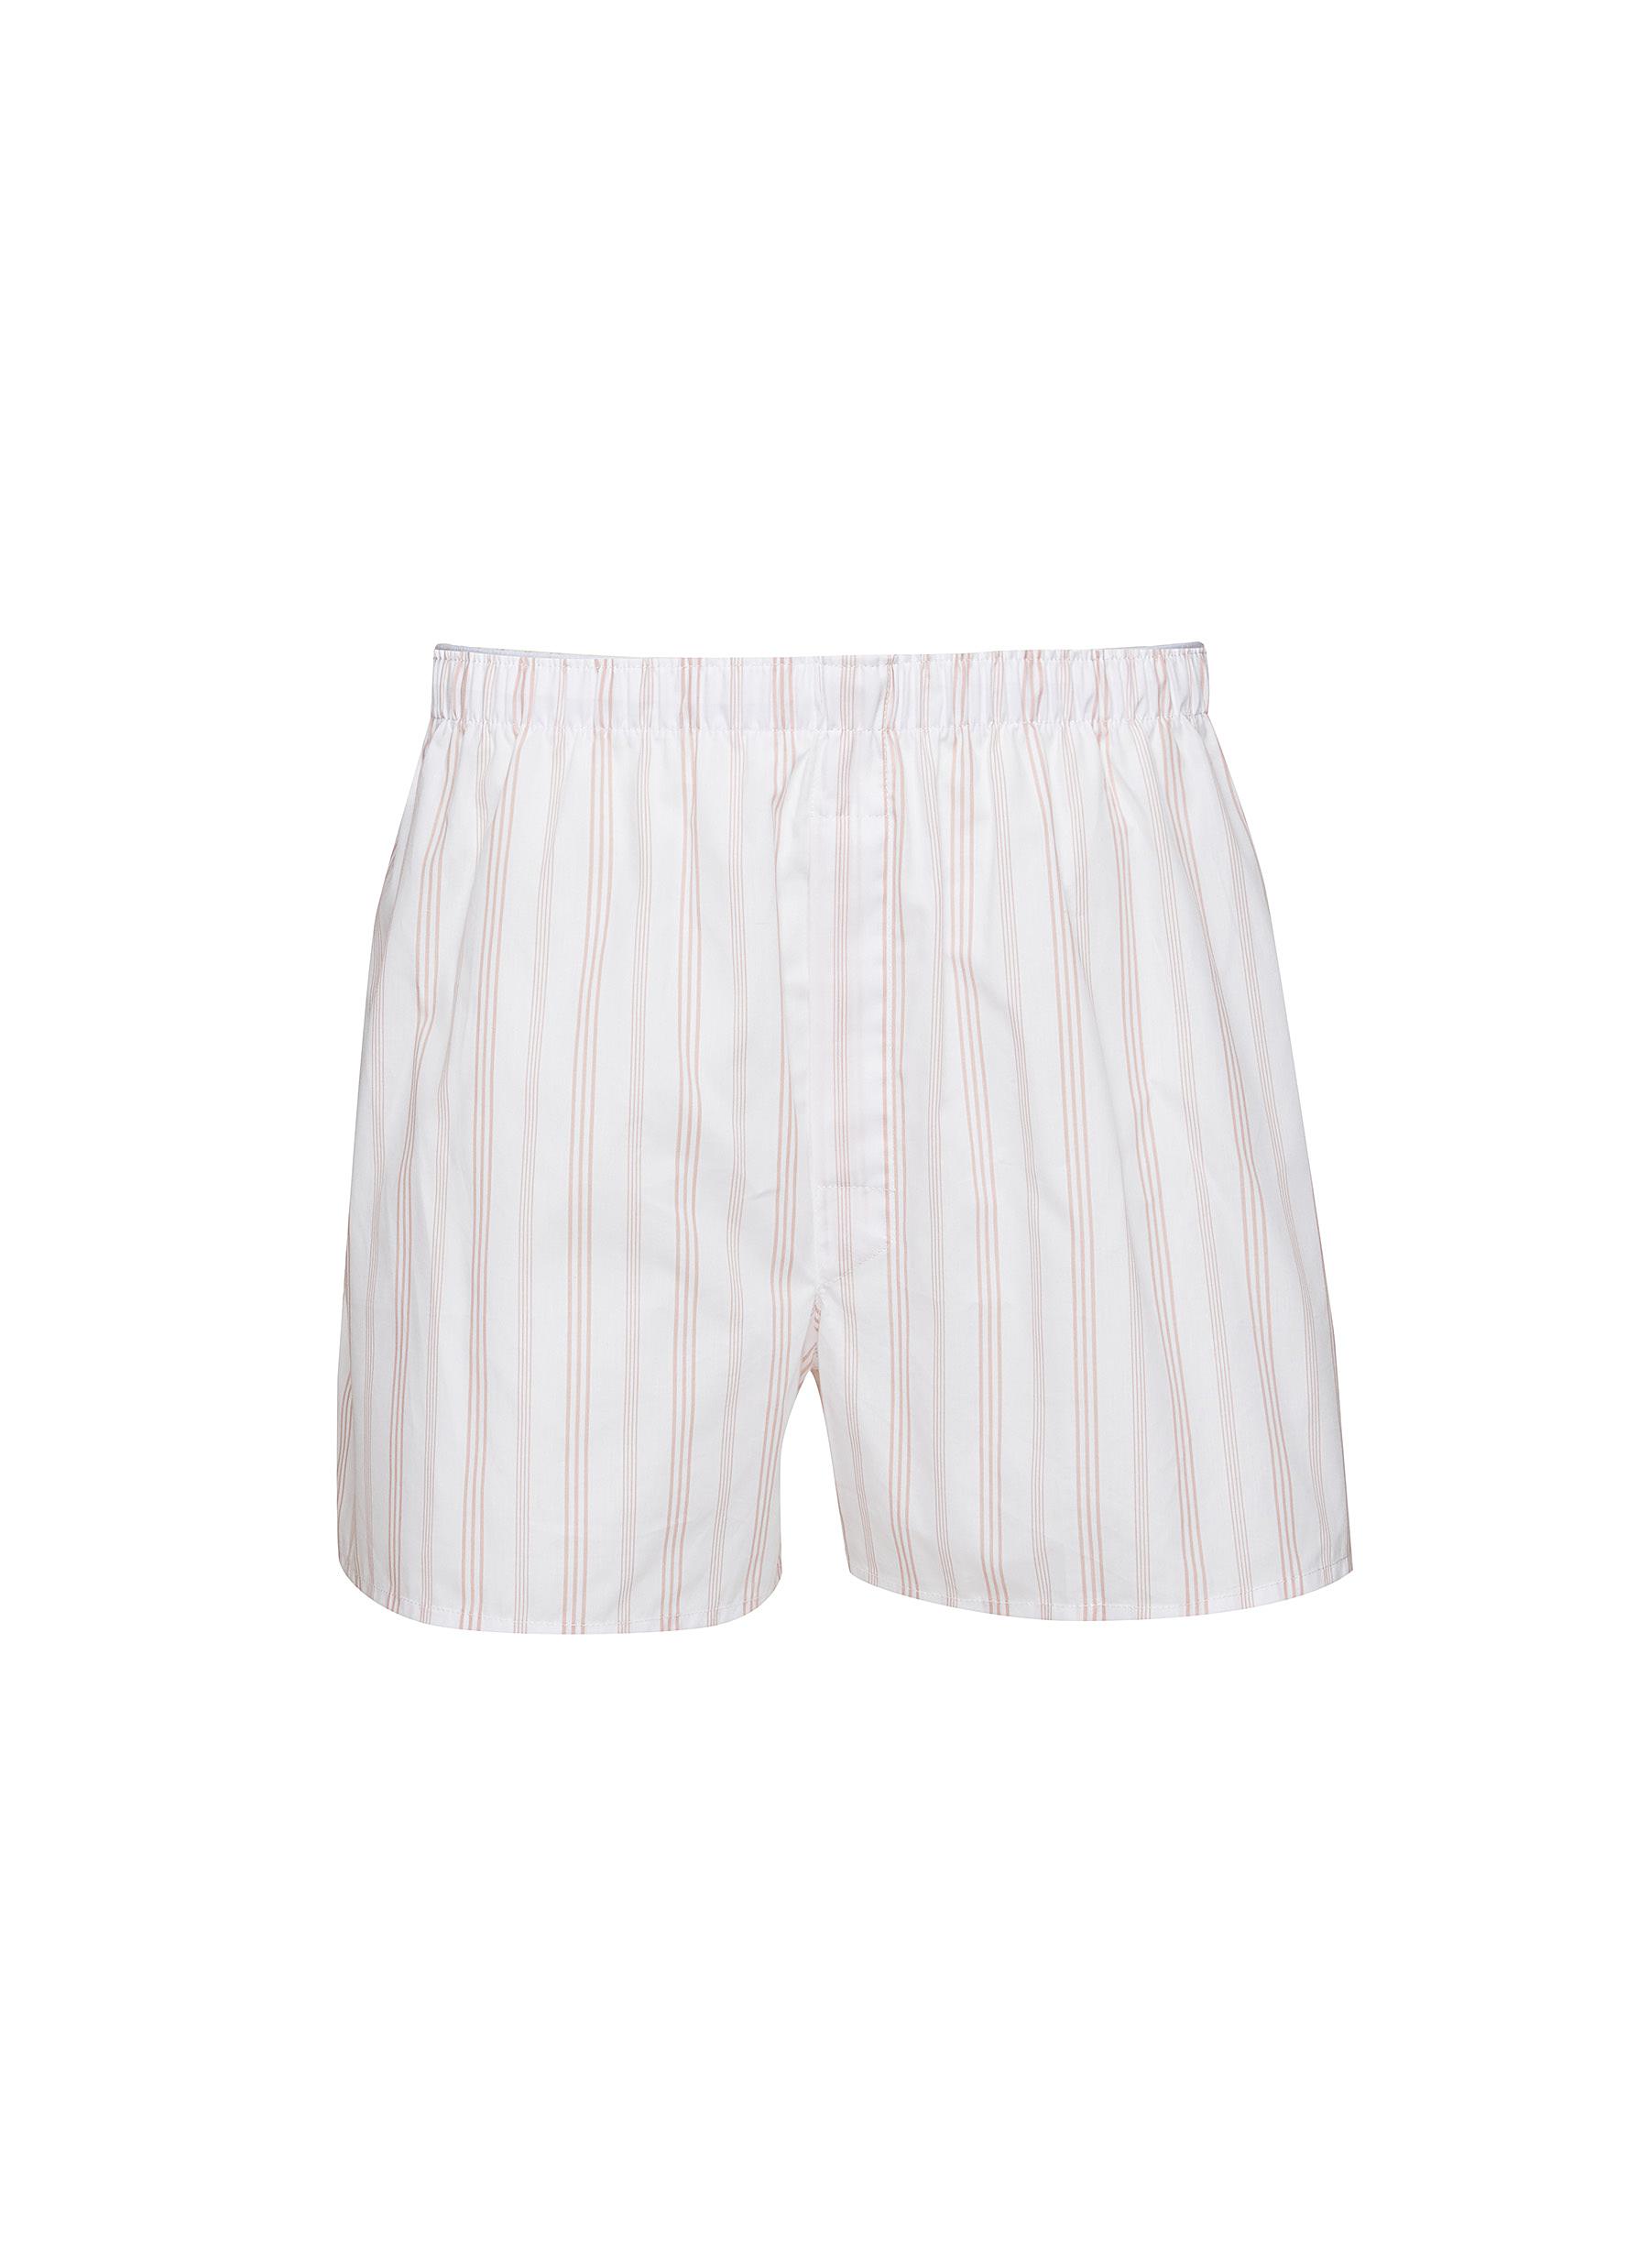 SUNSPEL, Stripe Cotton Boxer Shorts, Men